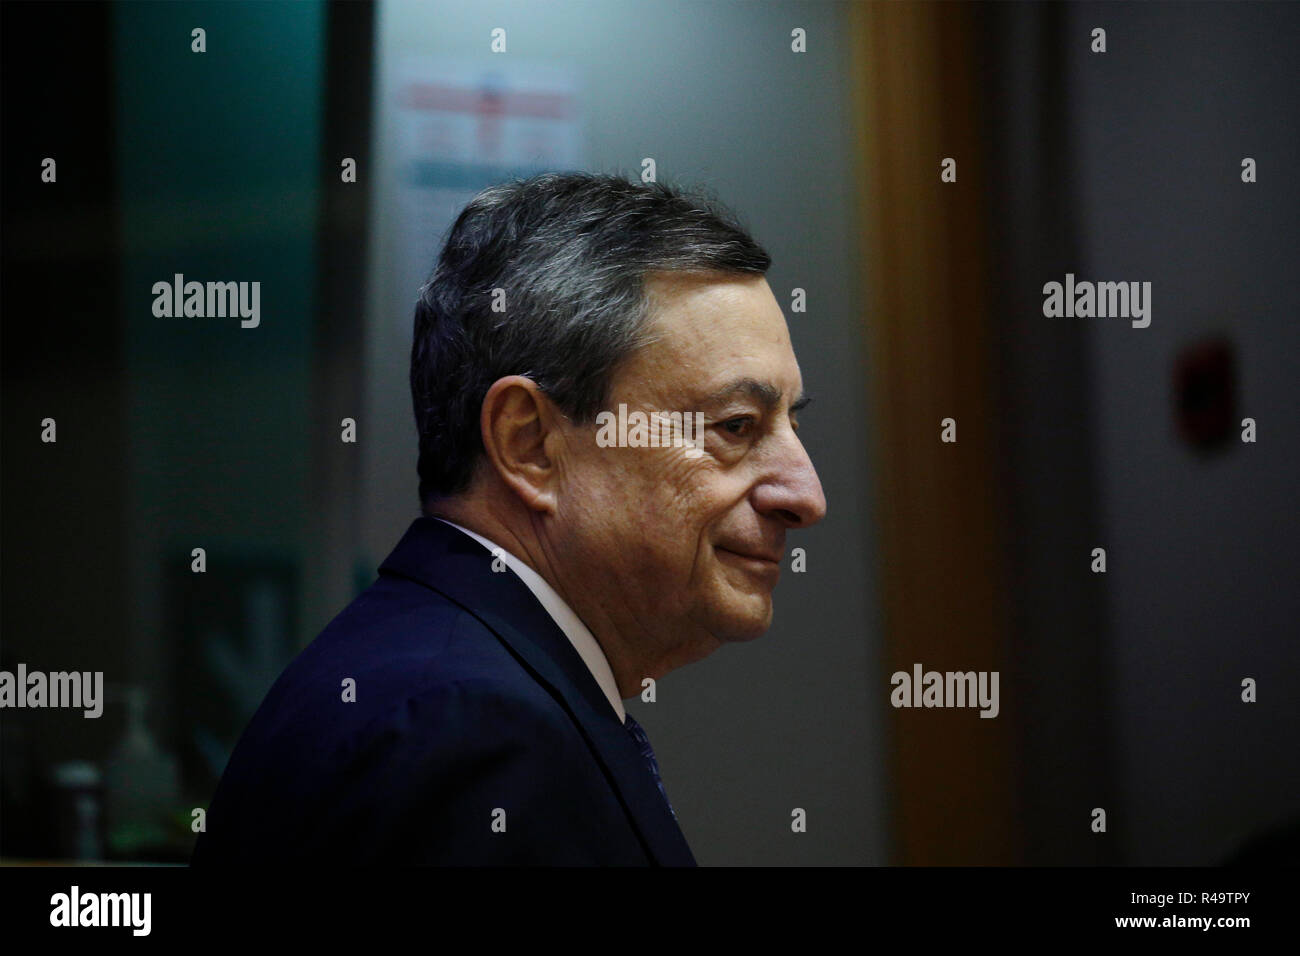 Brüssel, Belgien. 26. November 2018. Der Präsident der Europäischen Zentralbank, Mario Draghi liefert eine Rede im Europäischen Parlament Ausschuss für Wirtschaft und Währung. Alexandros Michailidis/Alamy leben Nachrichten Stockfoto